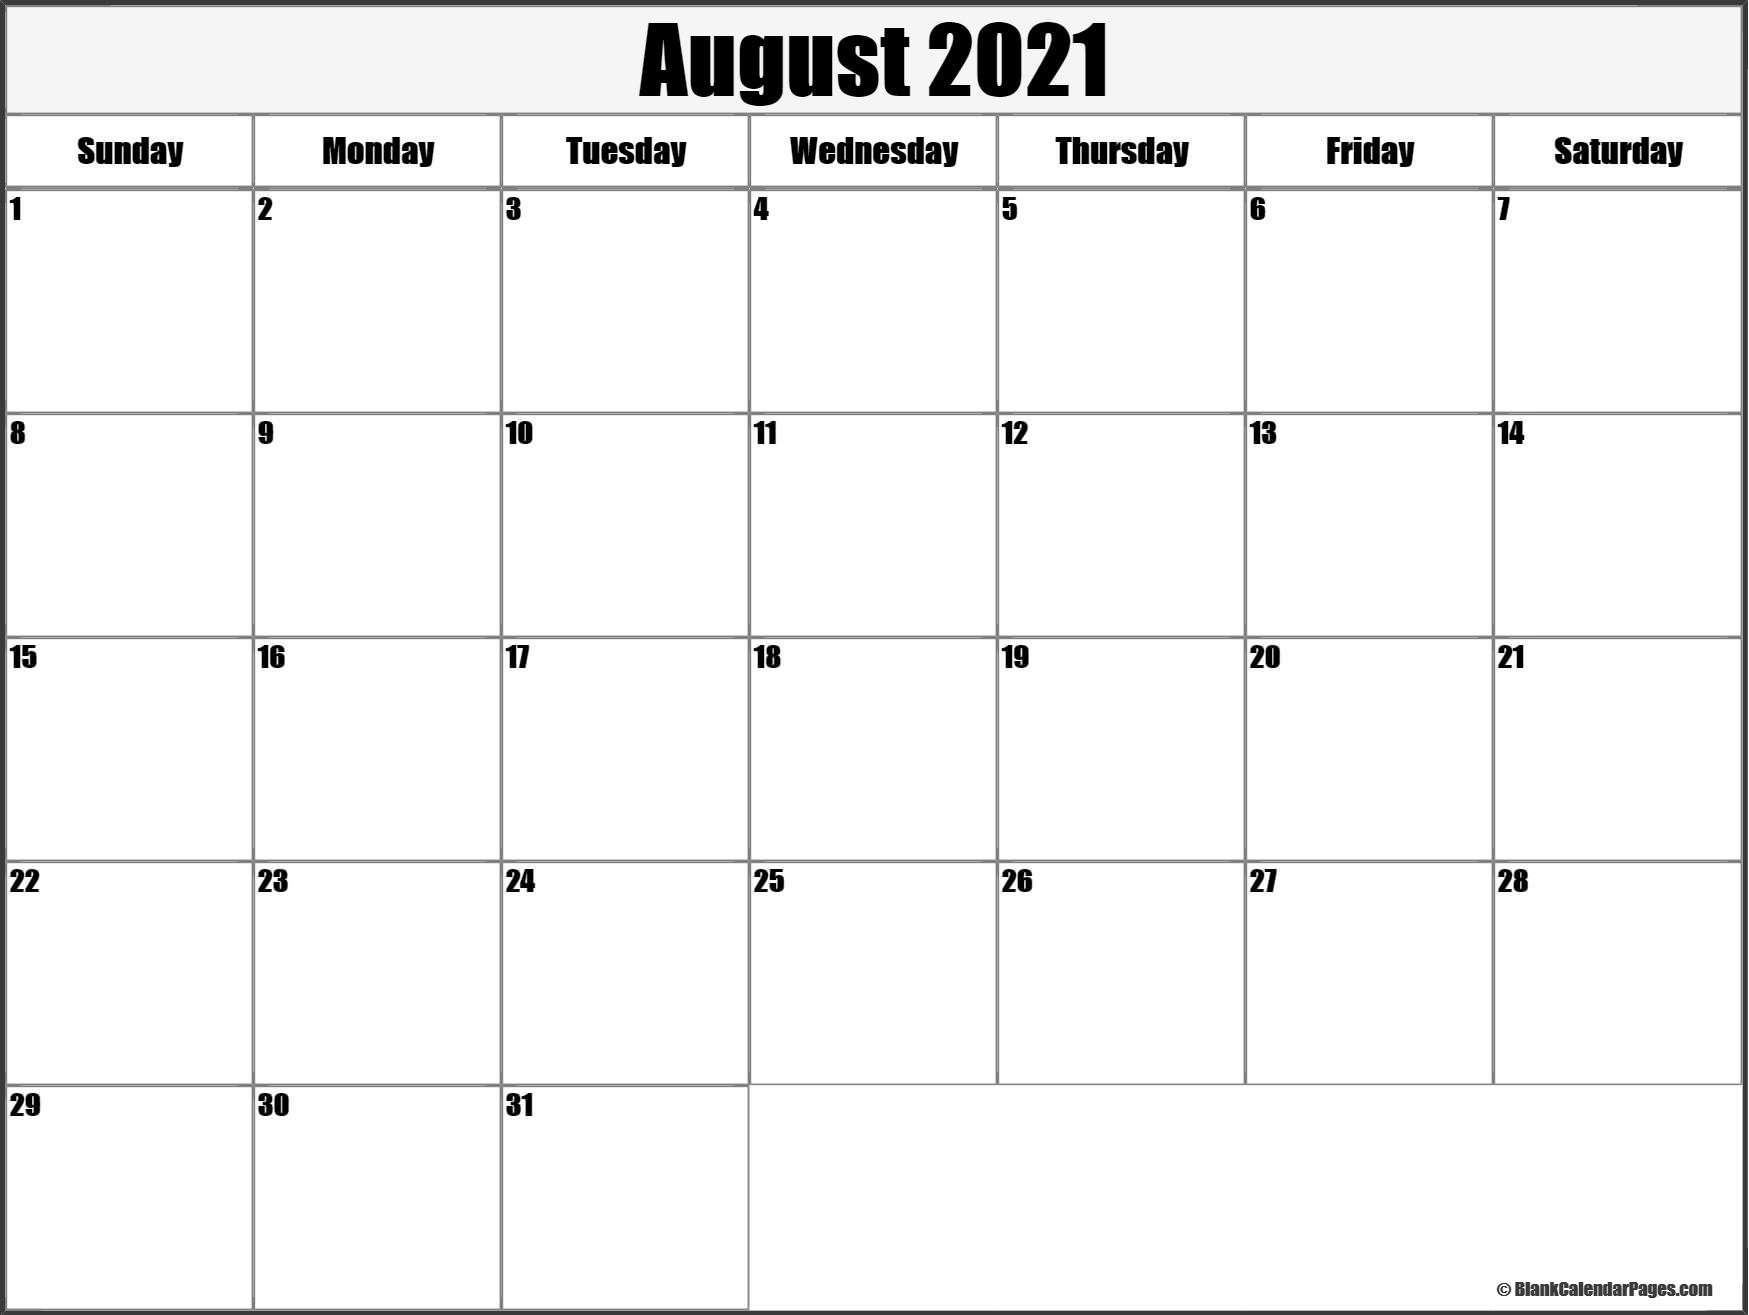 August 2021 Blank Calendar Templates.-August 2021 Calendar